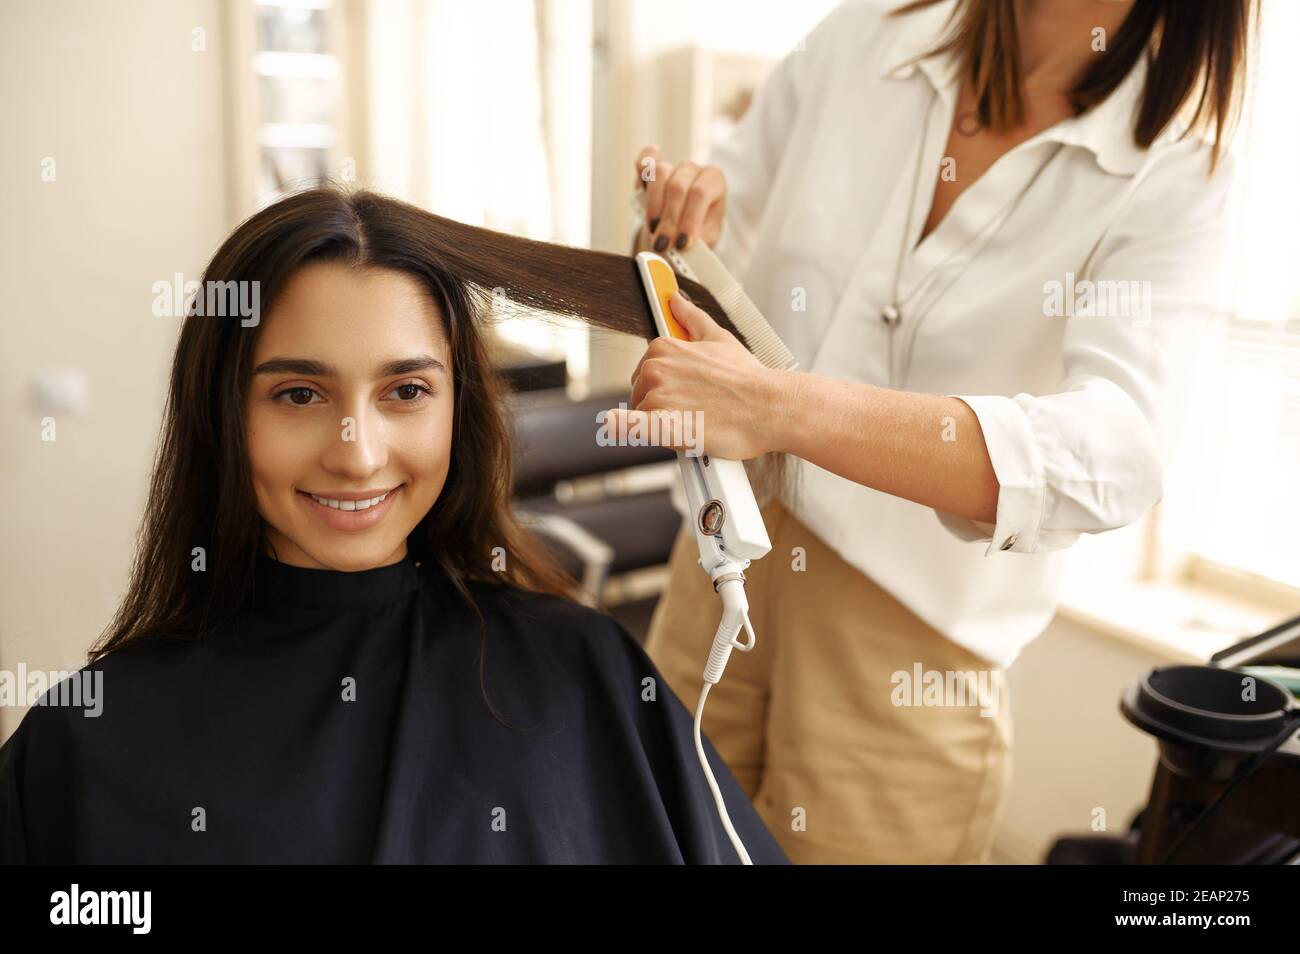 Coiffeur redresse les cheveux de la femme, salon de coiffure Banque D'Images